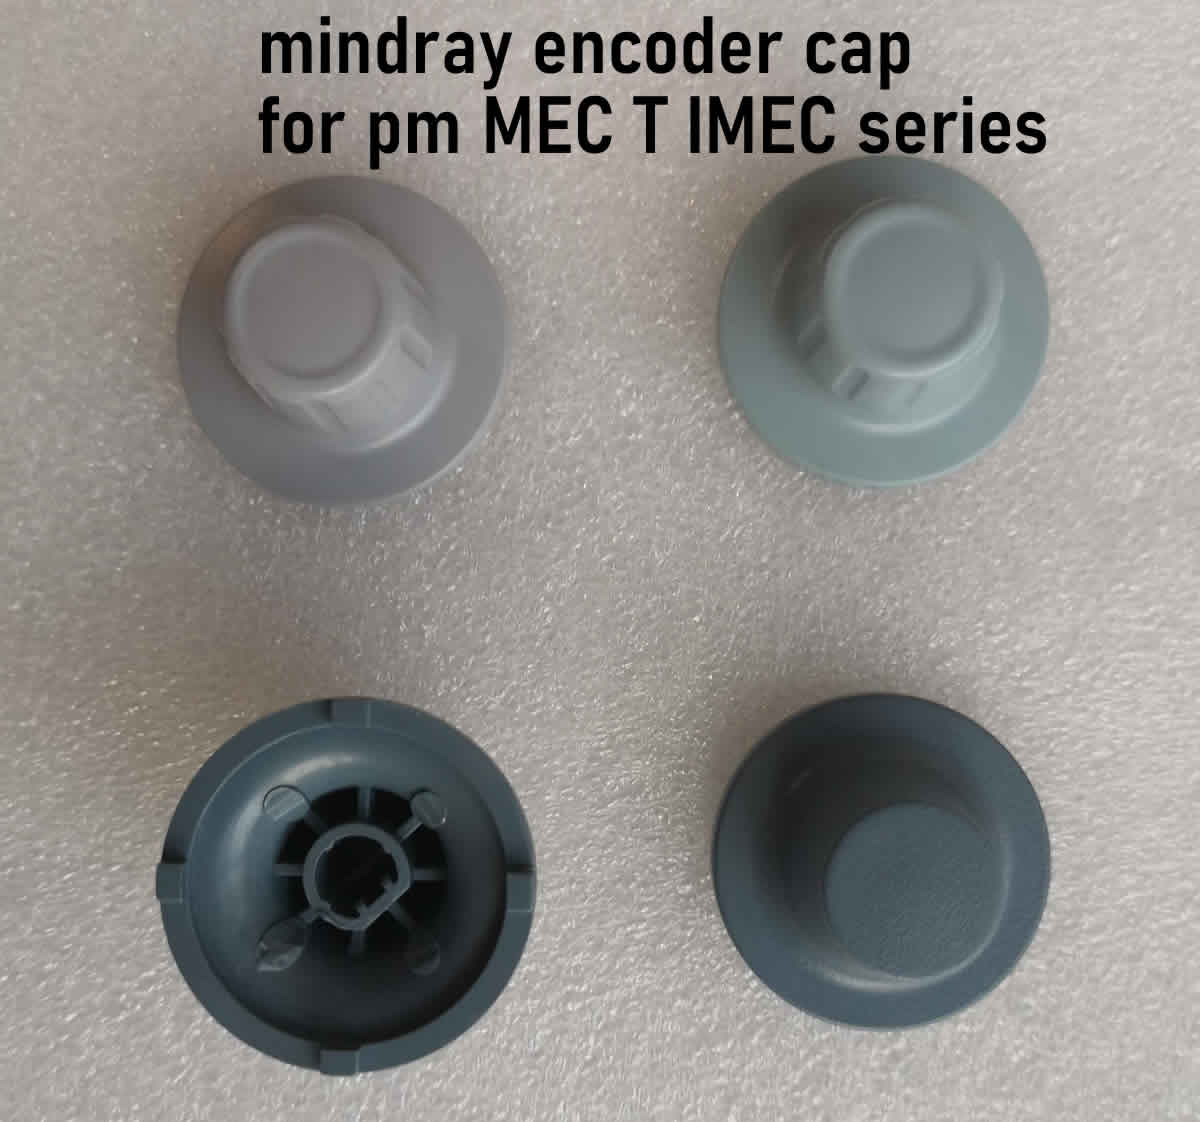 mindray pm MEC T IMEC monitor encoder cap medical parts